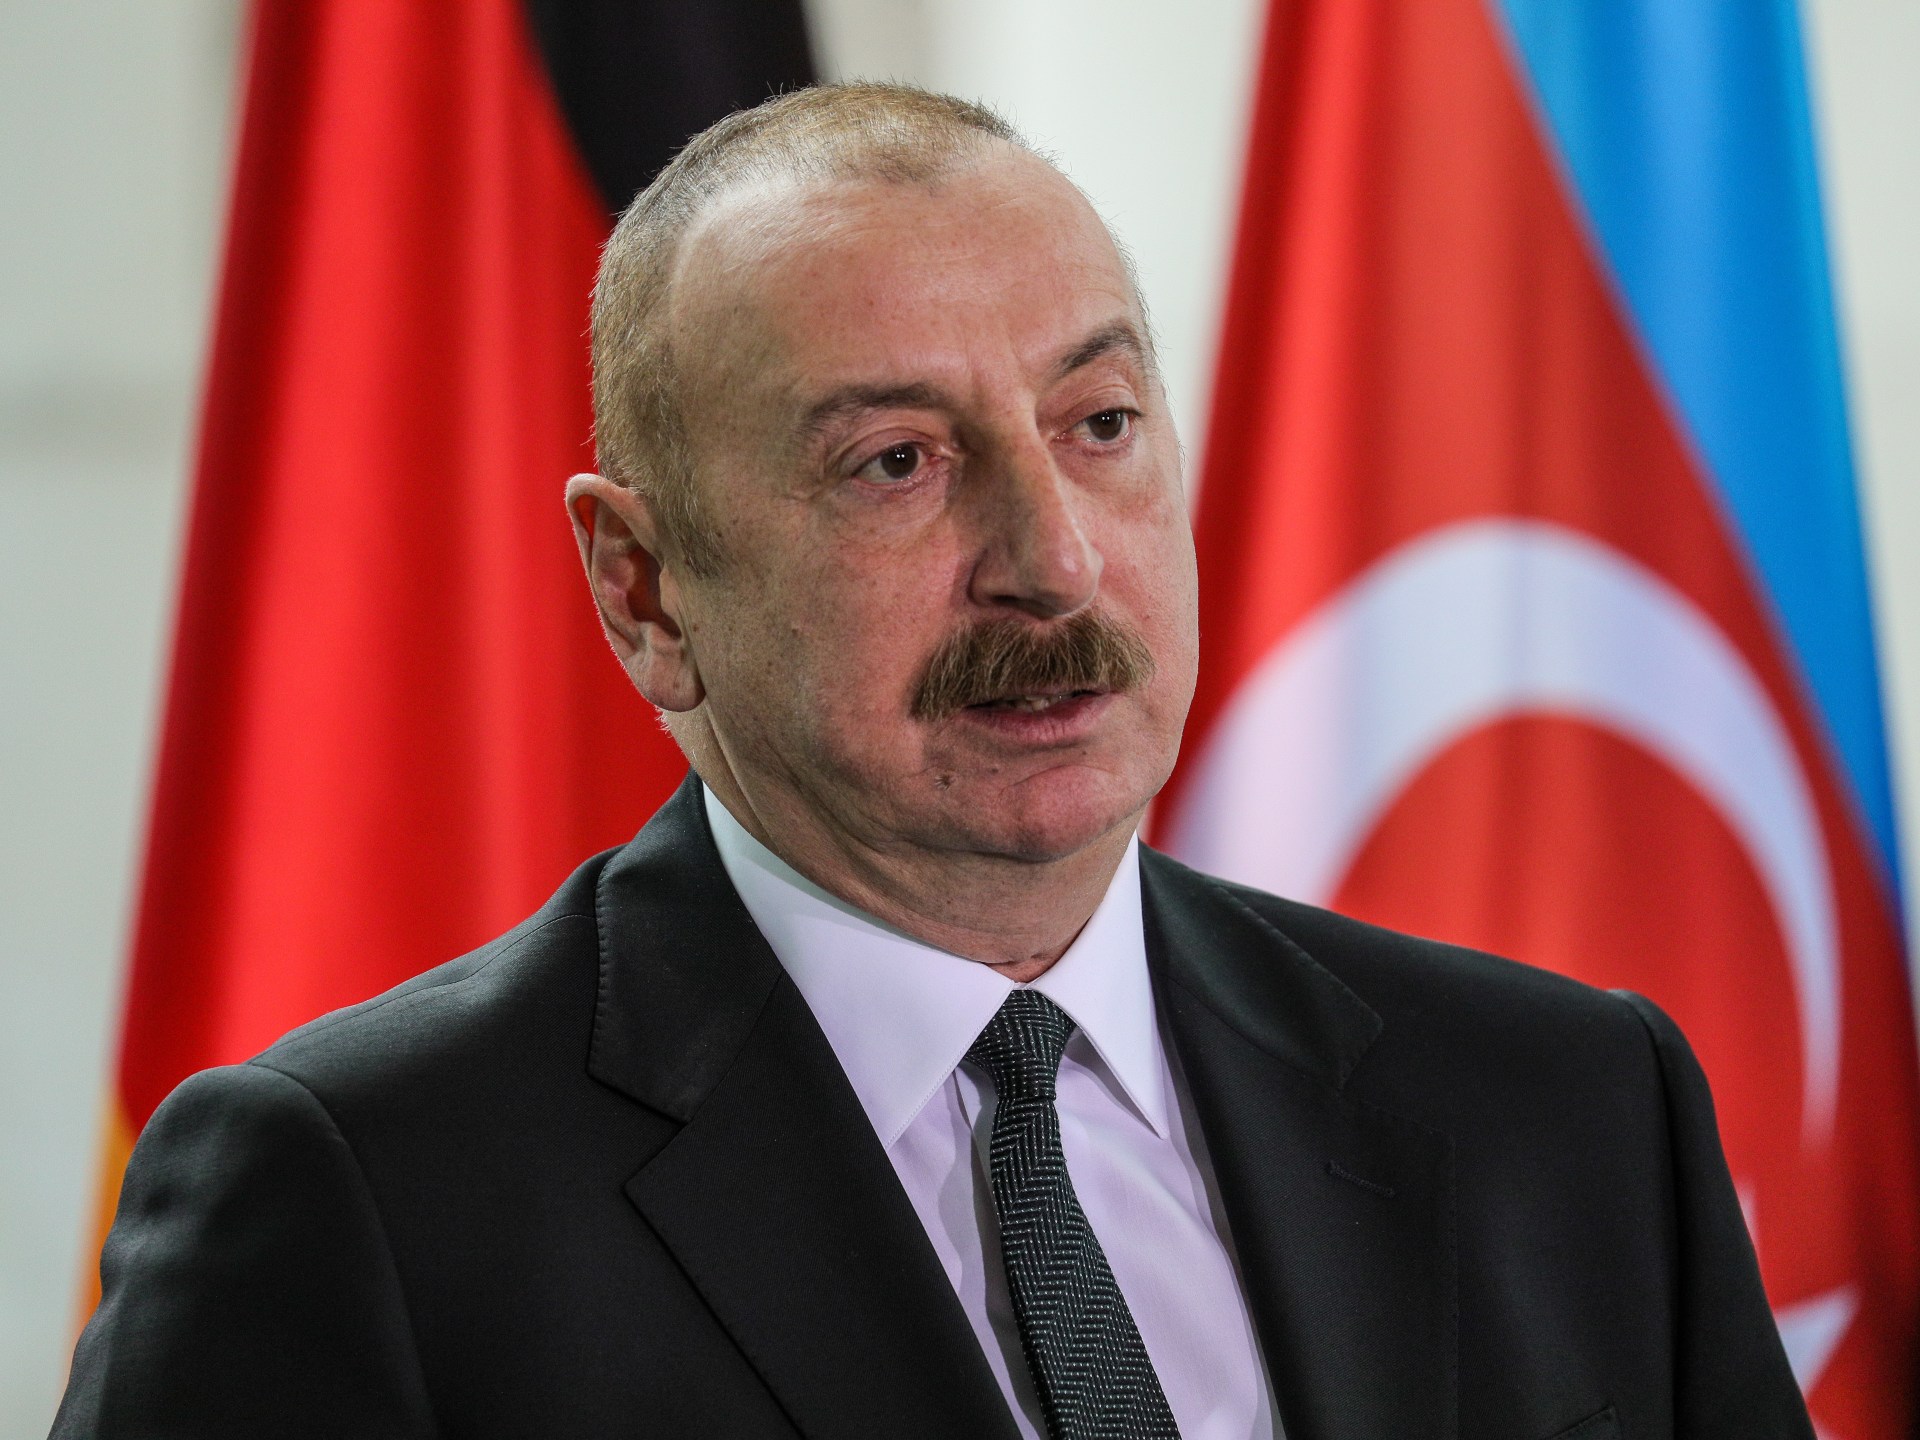 لماذا قرر إلهام علييف إجراء انتخابات رئاسية مبكرة في أذربيجان؟ | سياسة – البوكس نيوز